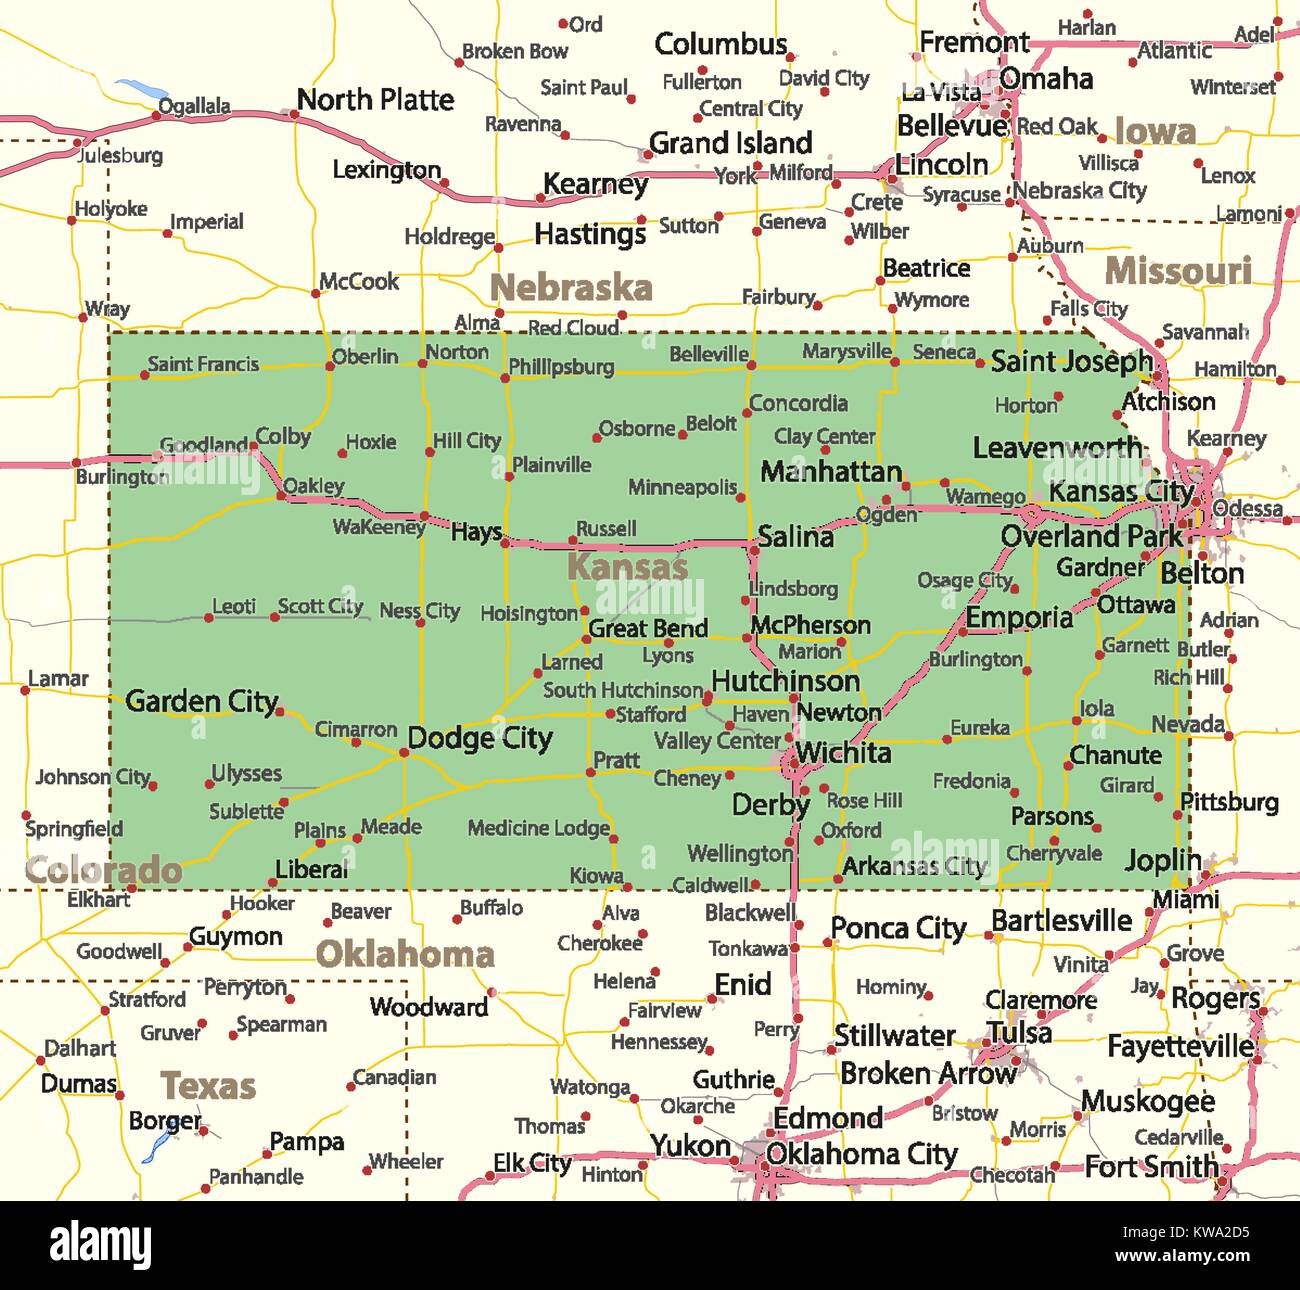 Mappa di Kansas. Mostra i confini, zone urbane, nomi di località, strade e autostrade. Proiezione: proiezione di Mercatore. Illustrazione Vettoriale